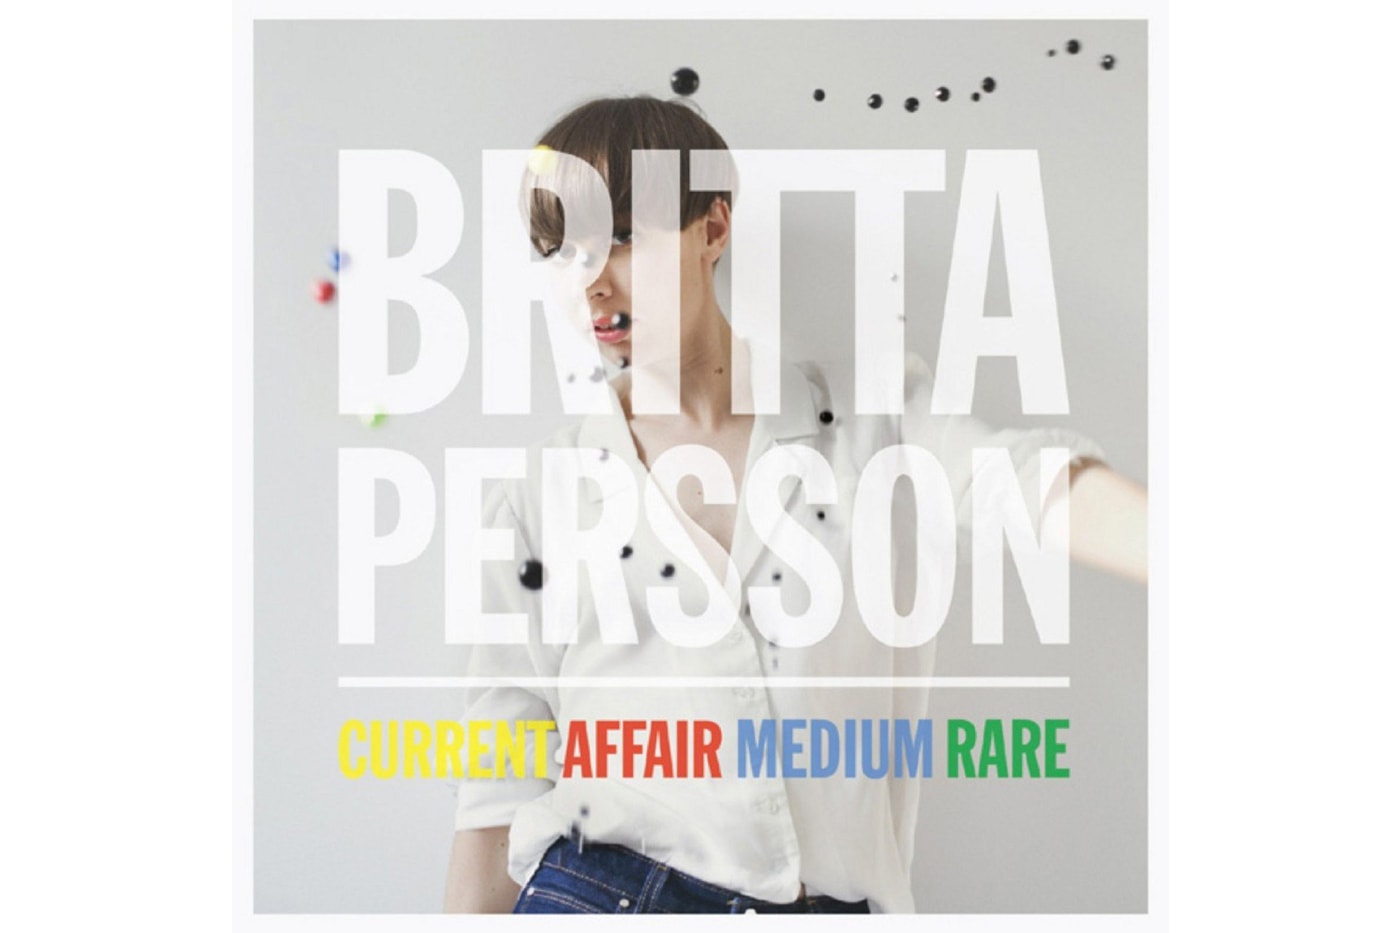 britta-persson-meet-a-bear